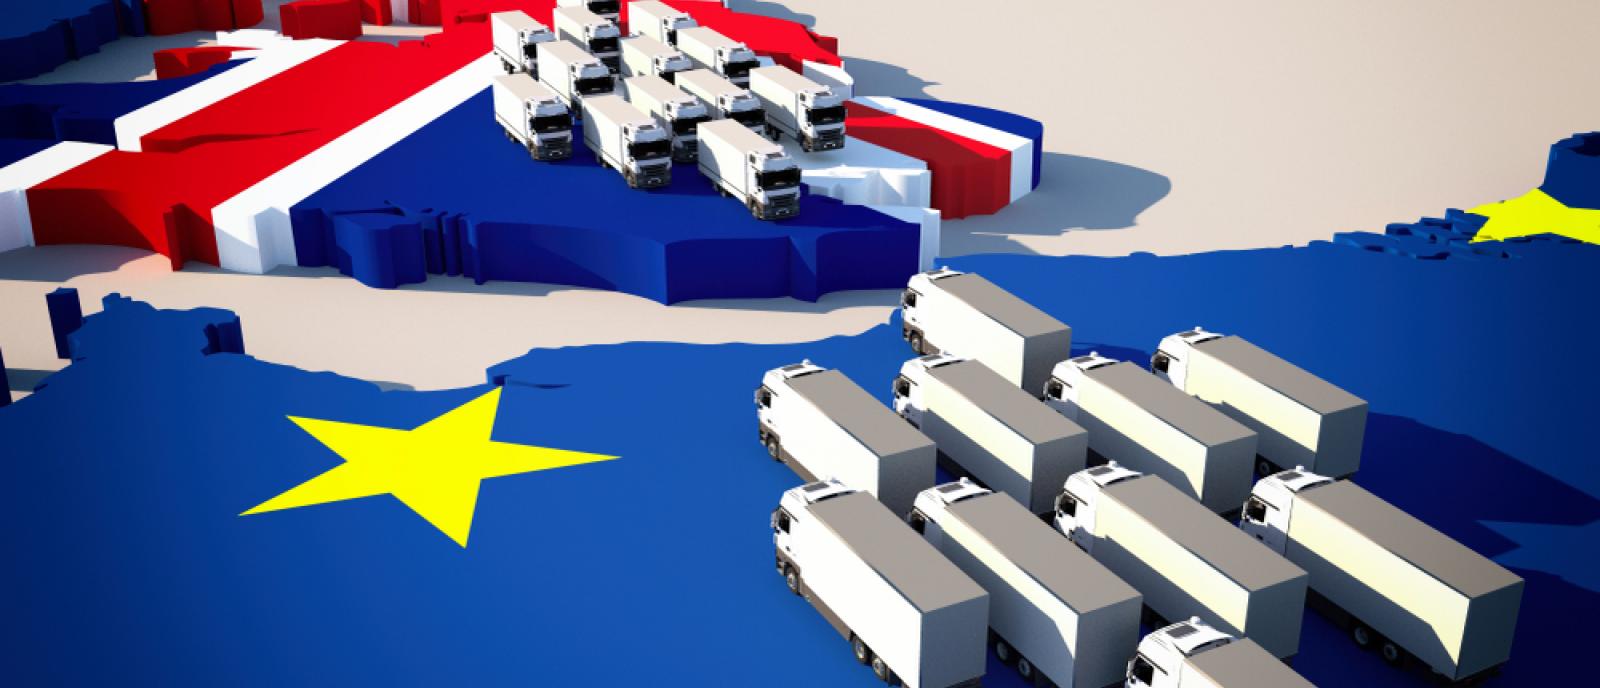 Accompagnant déjà plus de 50 États à travers le monde notamment dans la gestion des douanes, Bureau Veritas a les capacités pour mettre en œuvre des solutions en vue de la remise en place d’une frontière « dure » entre le Royaume-Uni et l’Europe continentale suite au référendum ayant conduit au Brexit. Explications.